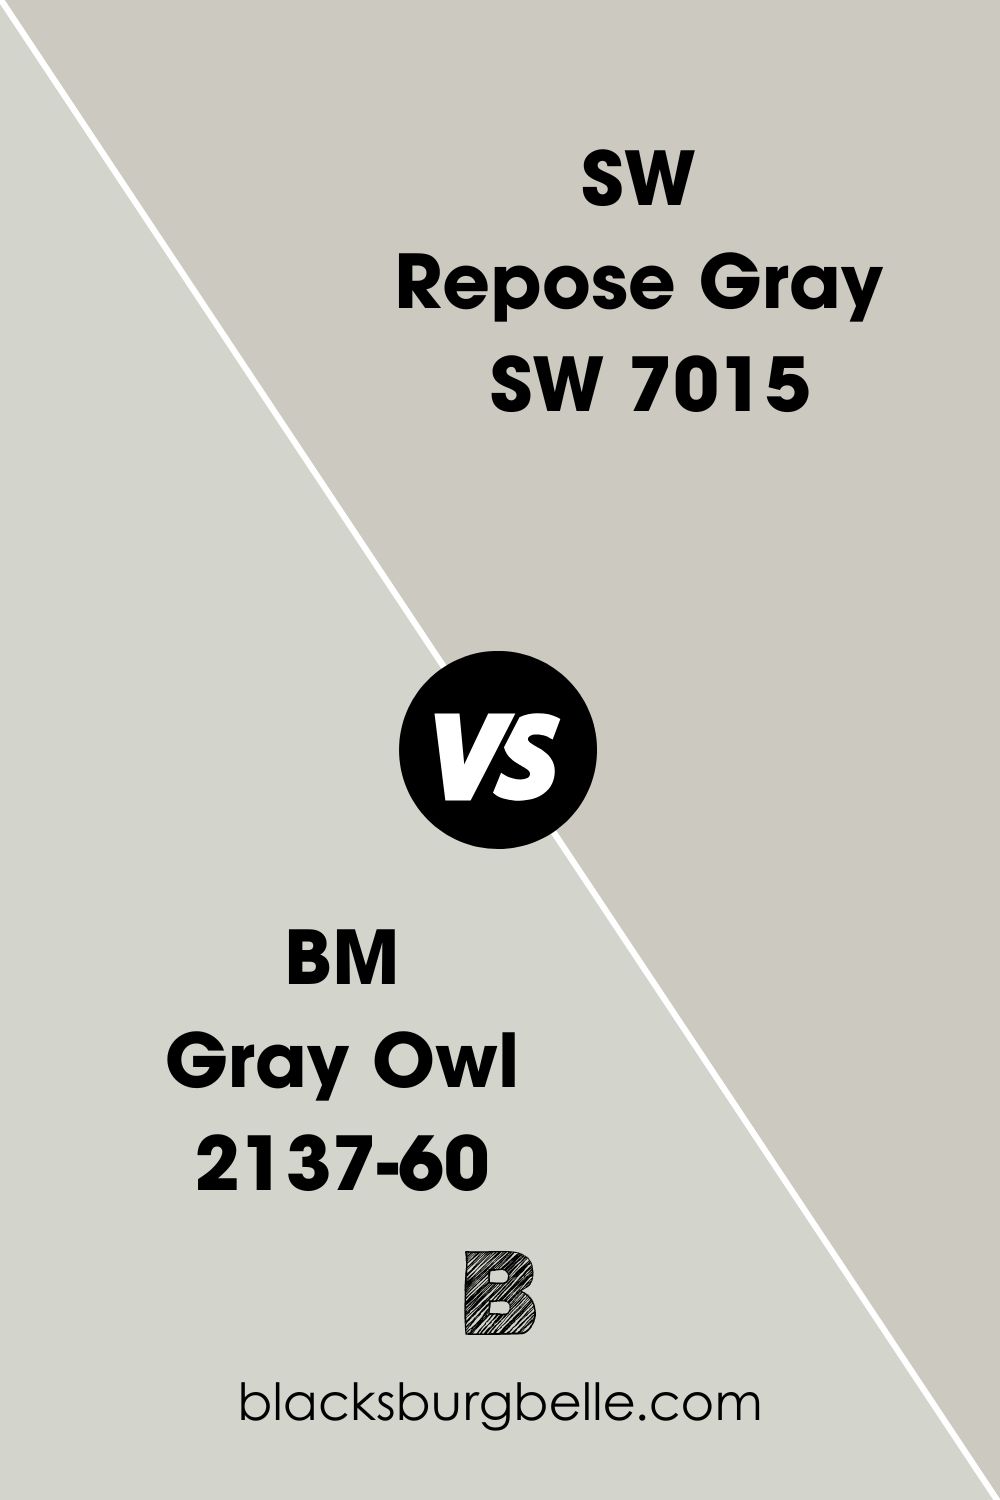 BM Gray Owl 2137-60